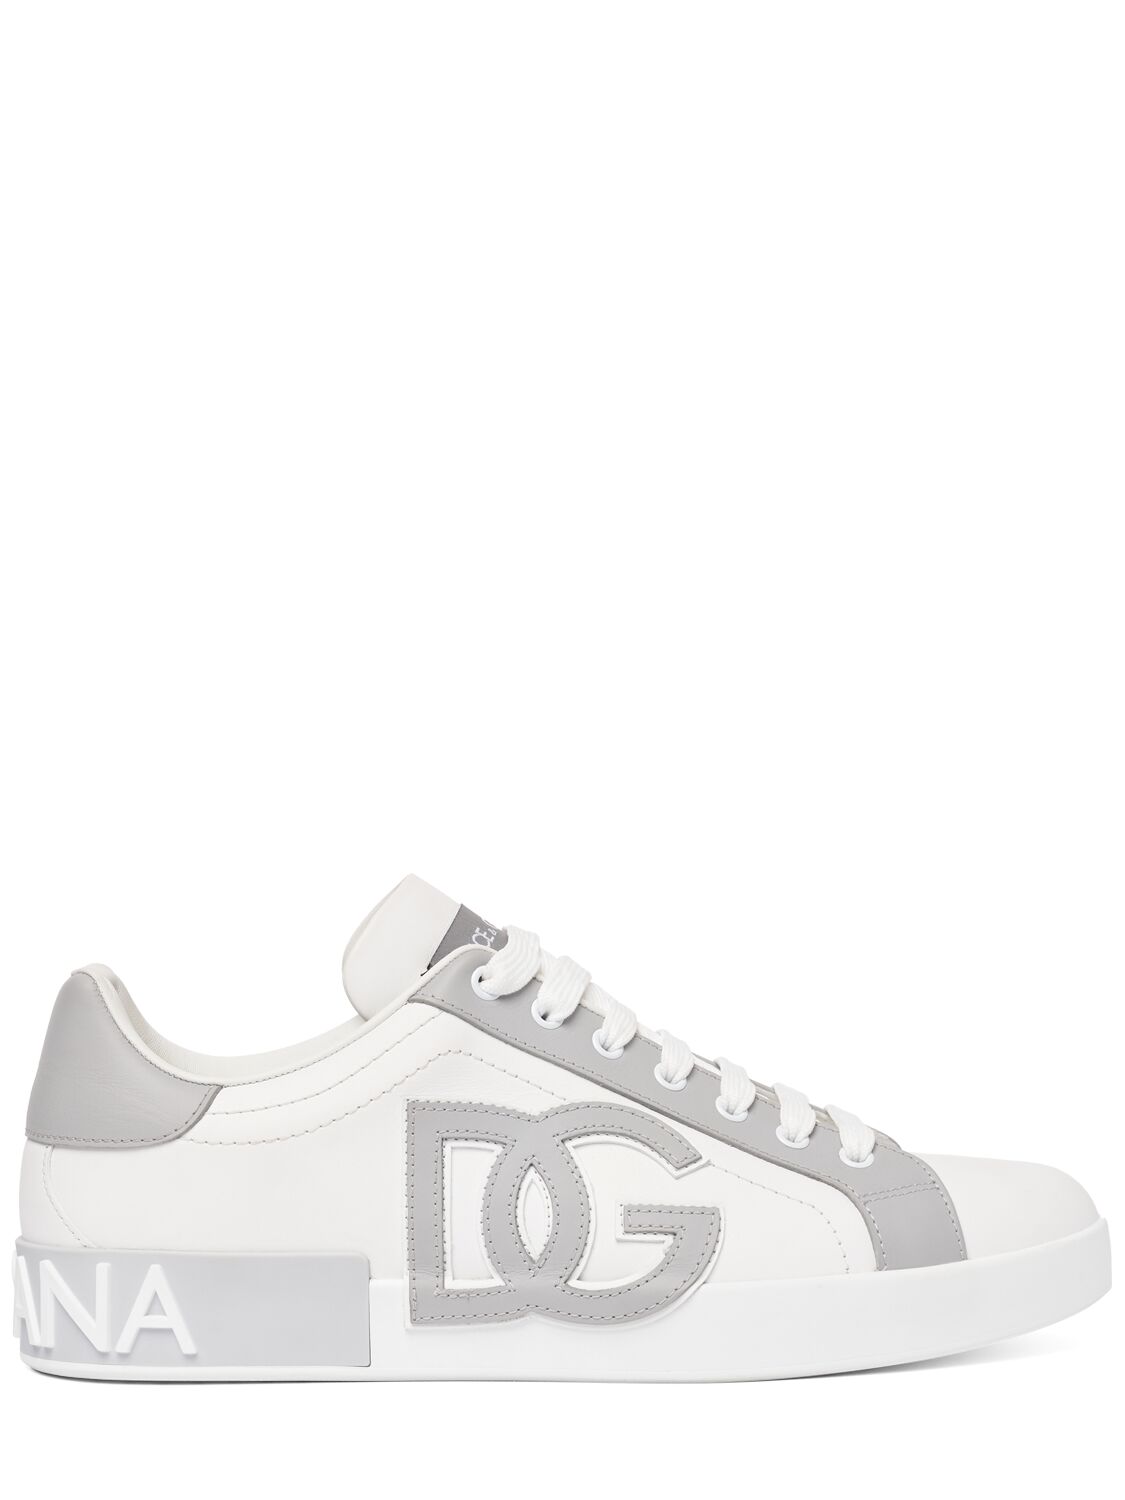 Dolce & Gabbana Portofino Low Top Leather Sneakers In White